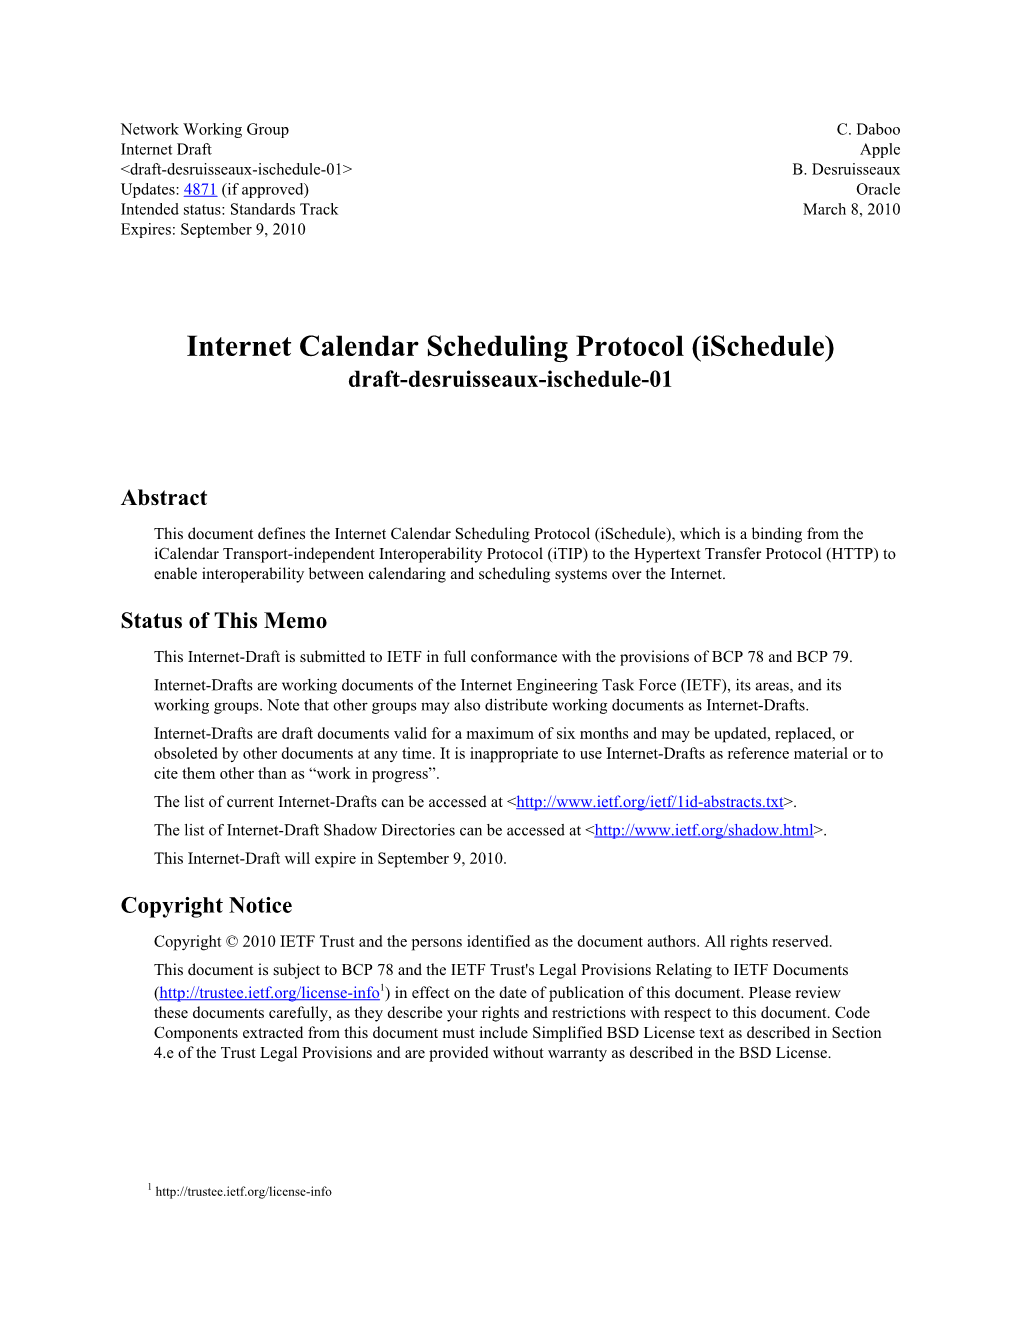 Internet Calendar Scheduling Protocol (Ischedule) Draft-Desruisseaux-Ischedule-01